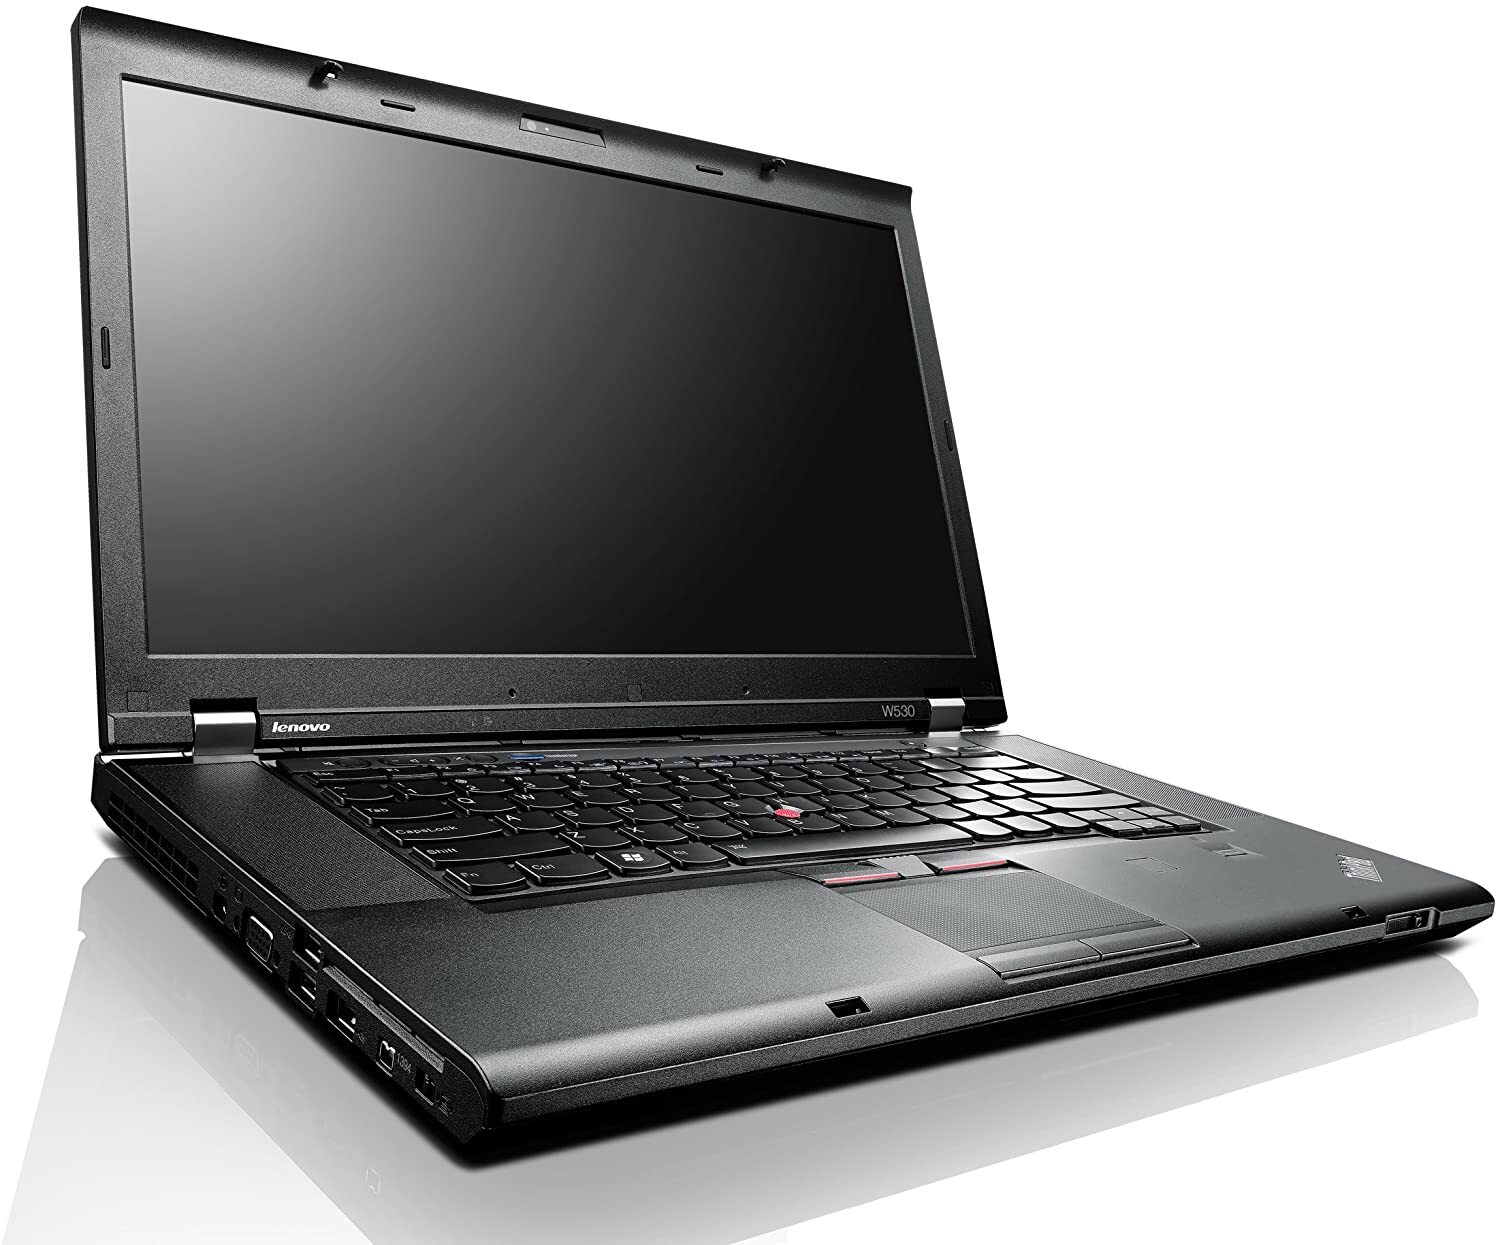 Lenovo ThinkPad W530 i7 3820QM 2.70Ghz 16GB RAM 500GB HDD 15" HD NO OS  Full Size Image